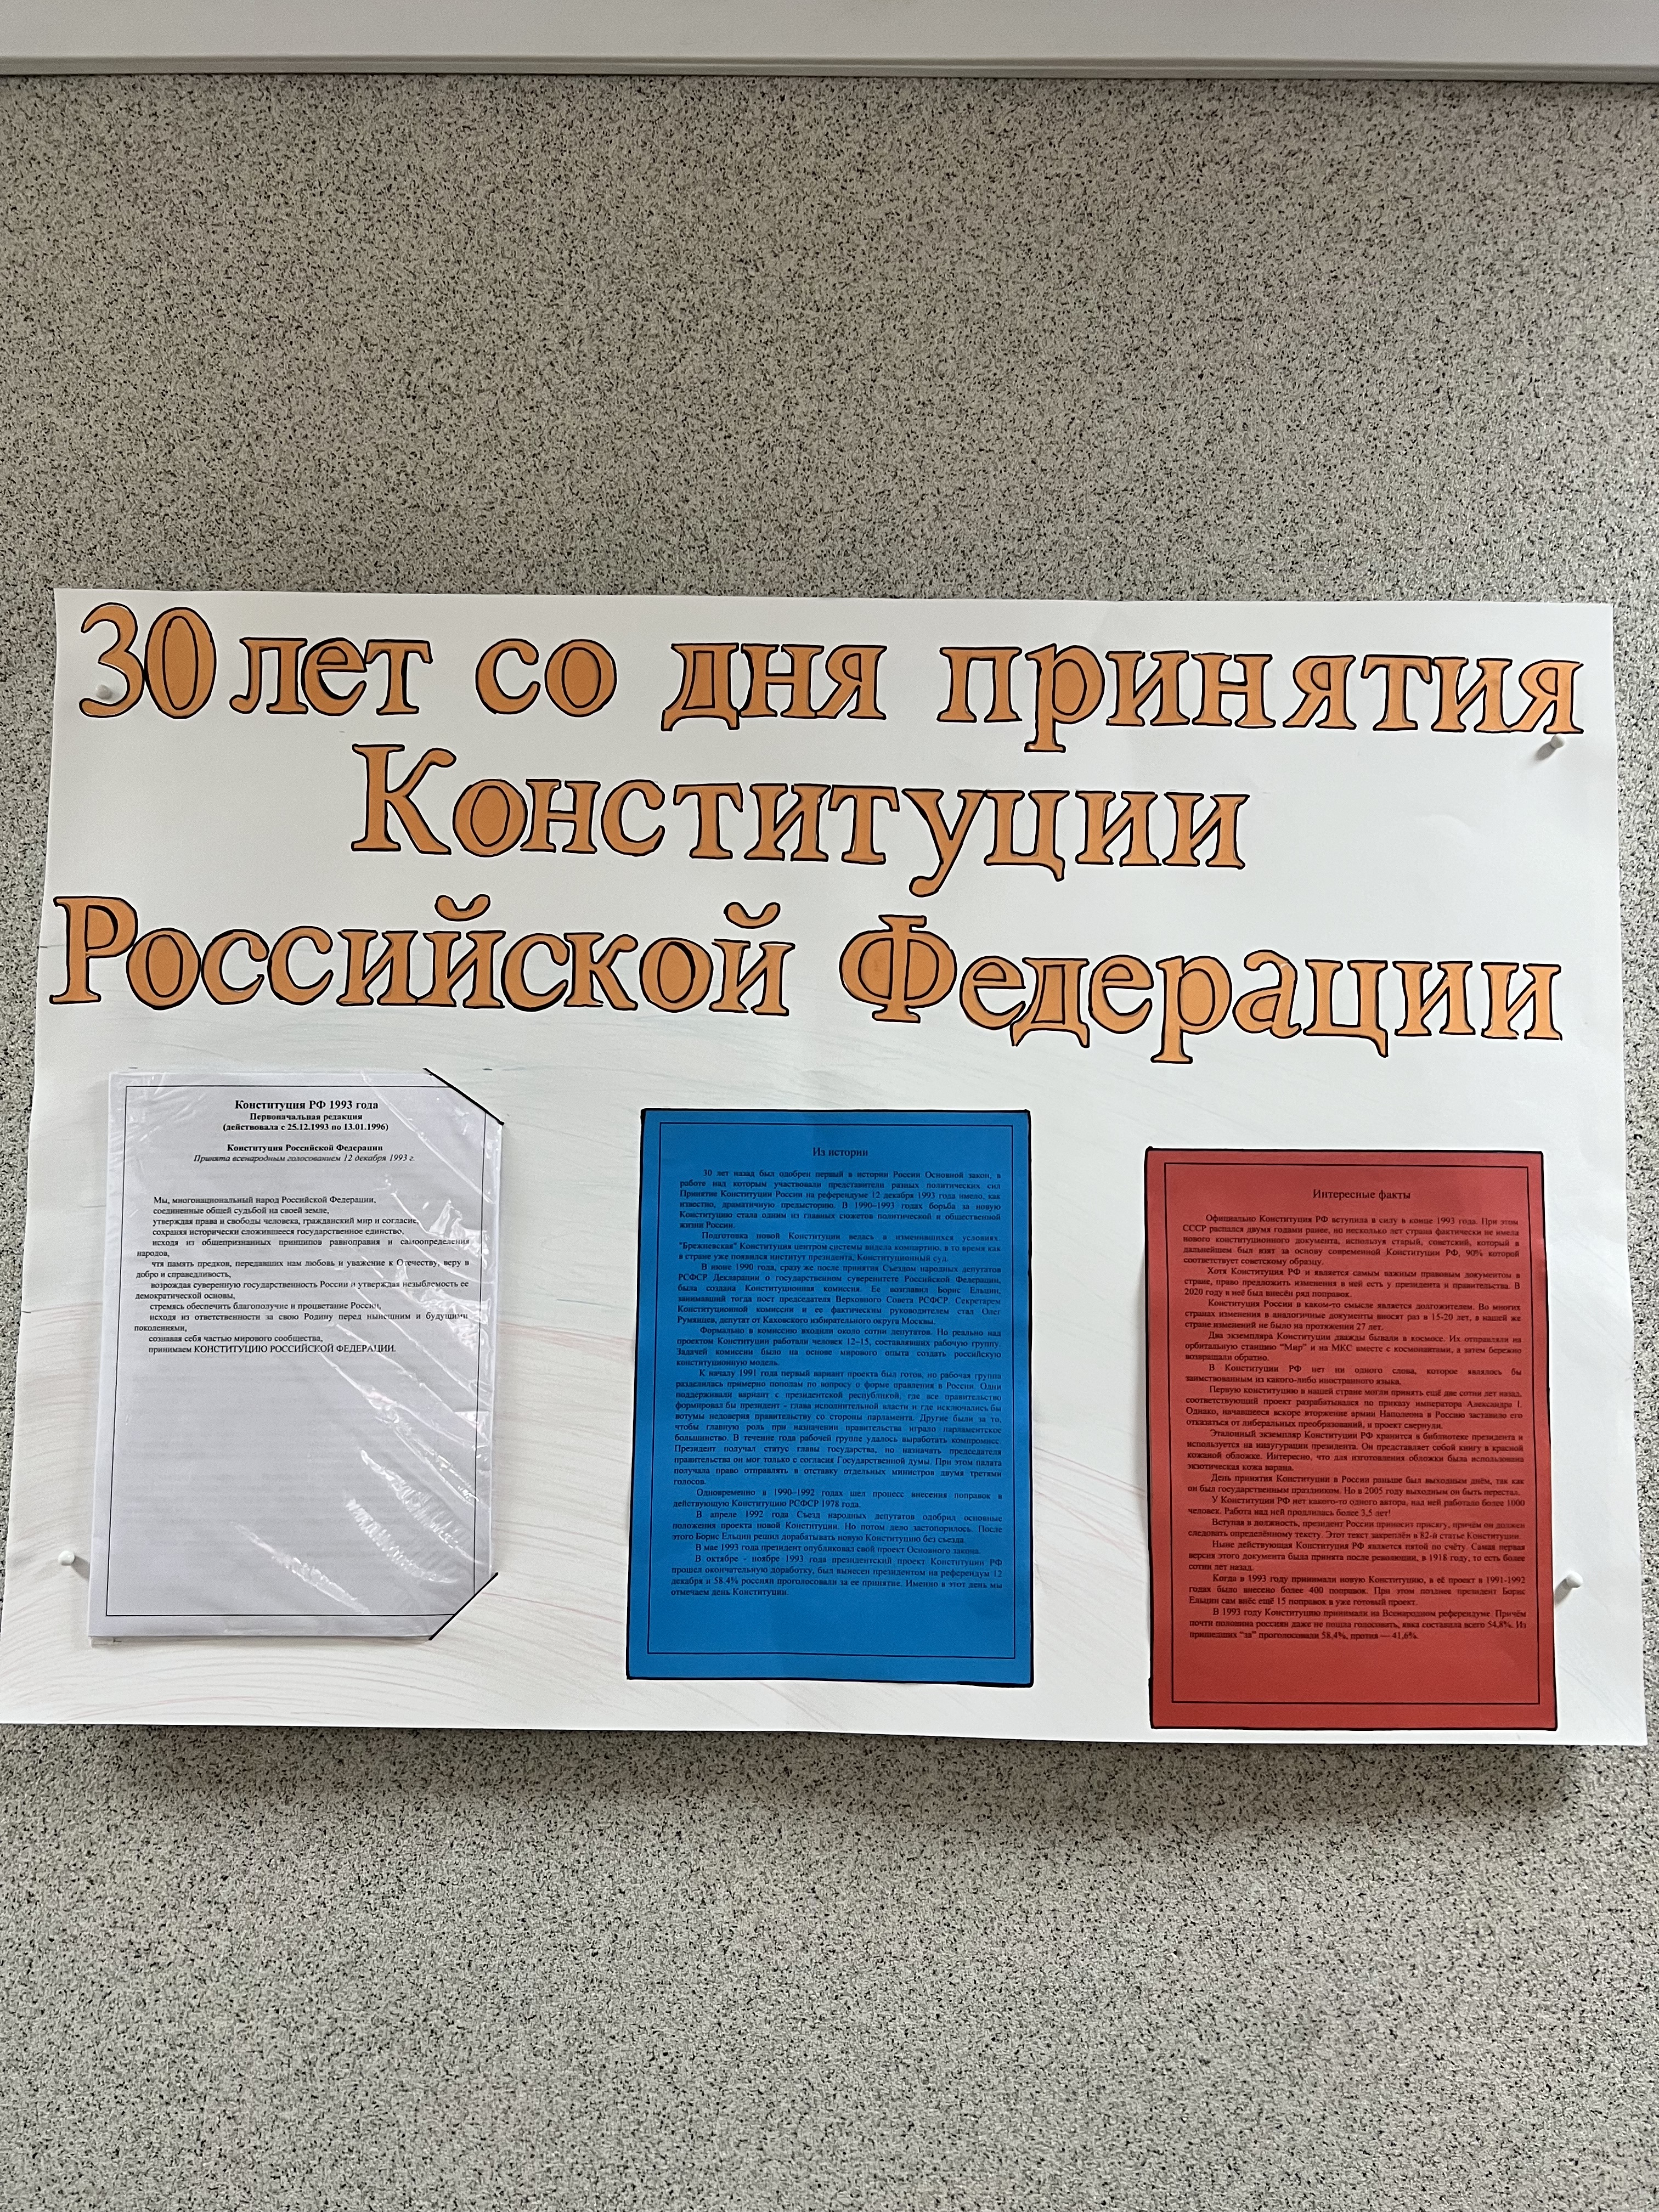 В суде оформлен информационный стенд к 30-летию Конституции Российской Федерации